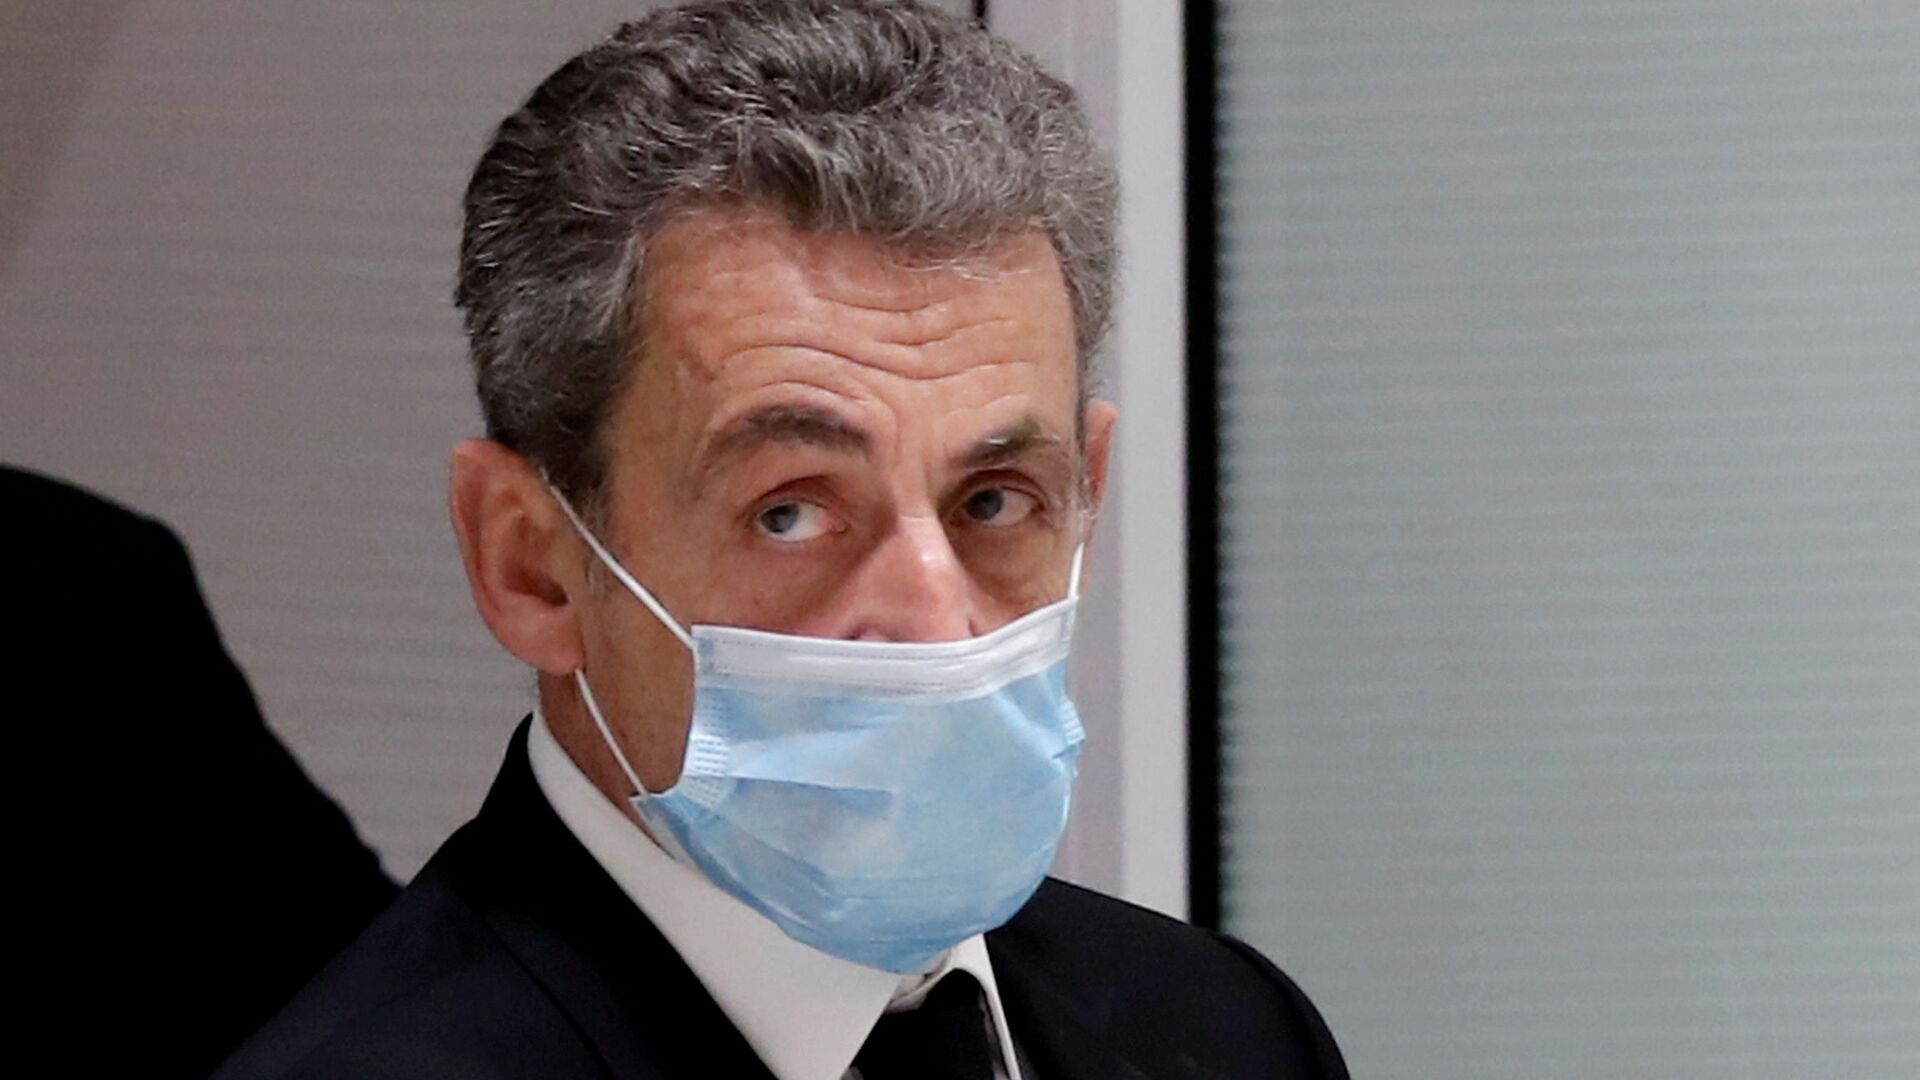 L'ex-Président français Nicolas Sarkozy au tribunal, le 1 mars 2021 - Sputnik Afrique, 1920, 24.06.2021